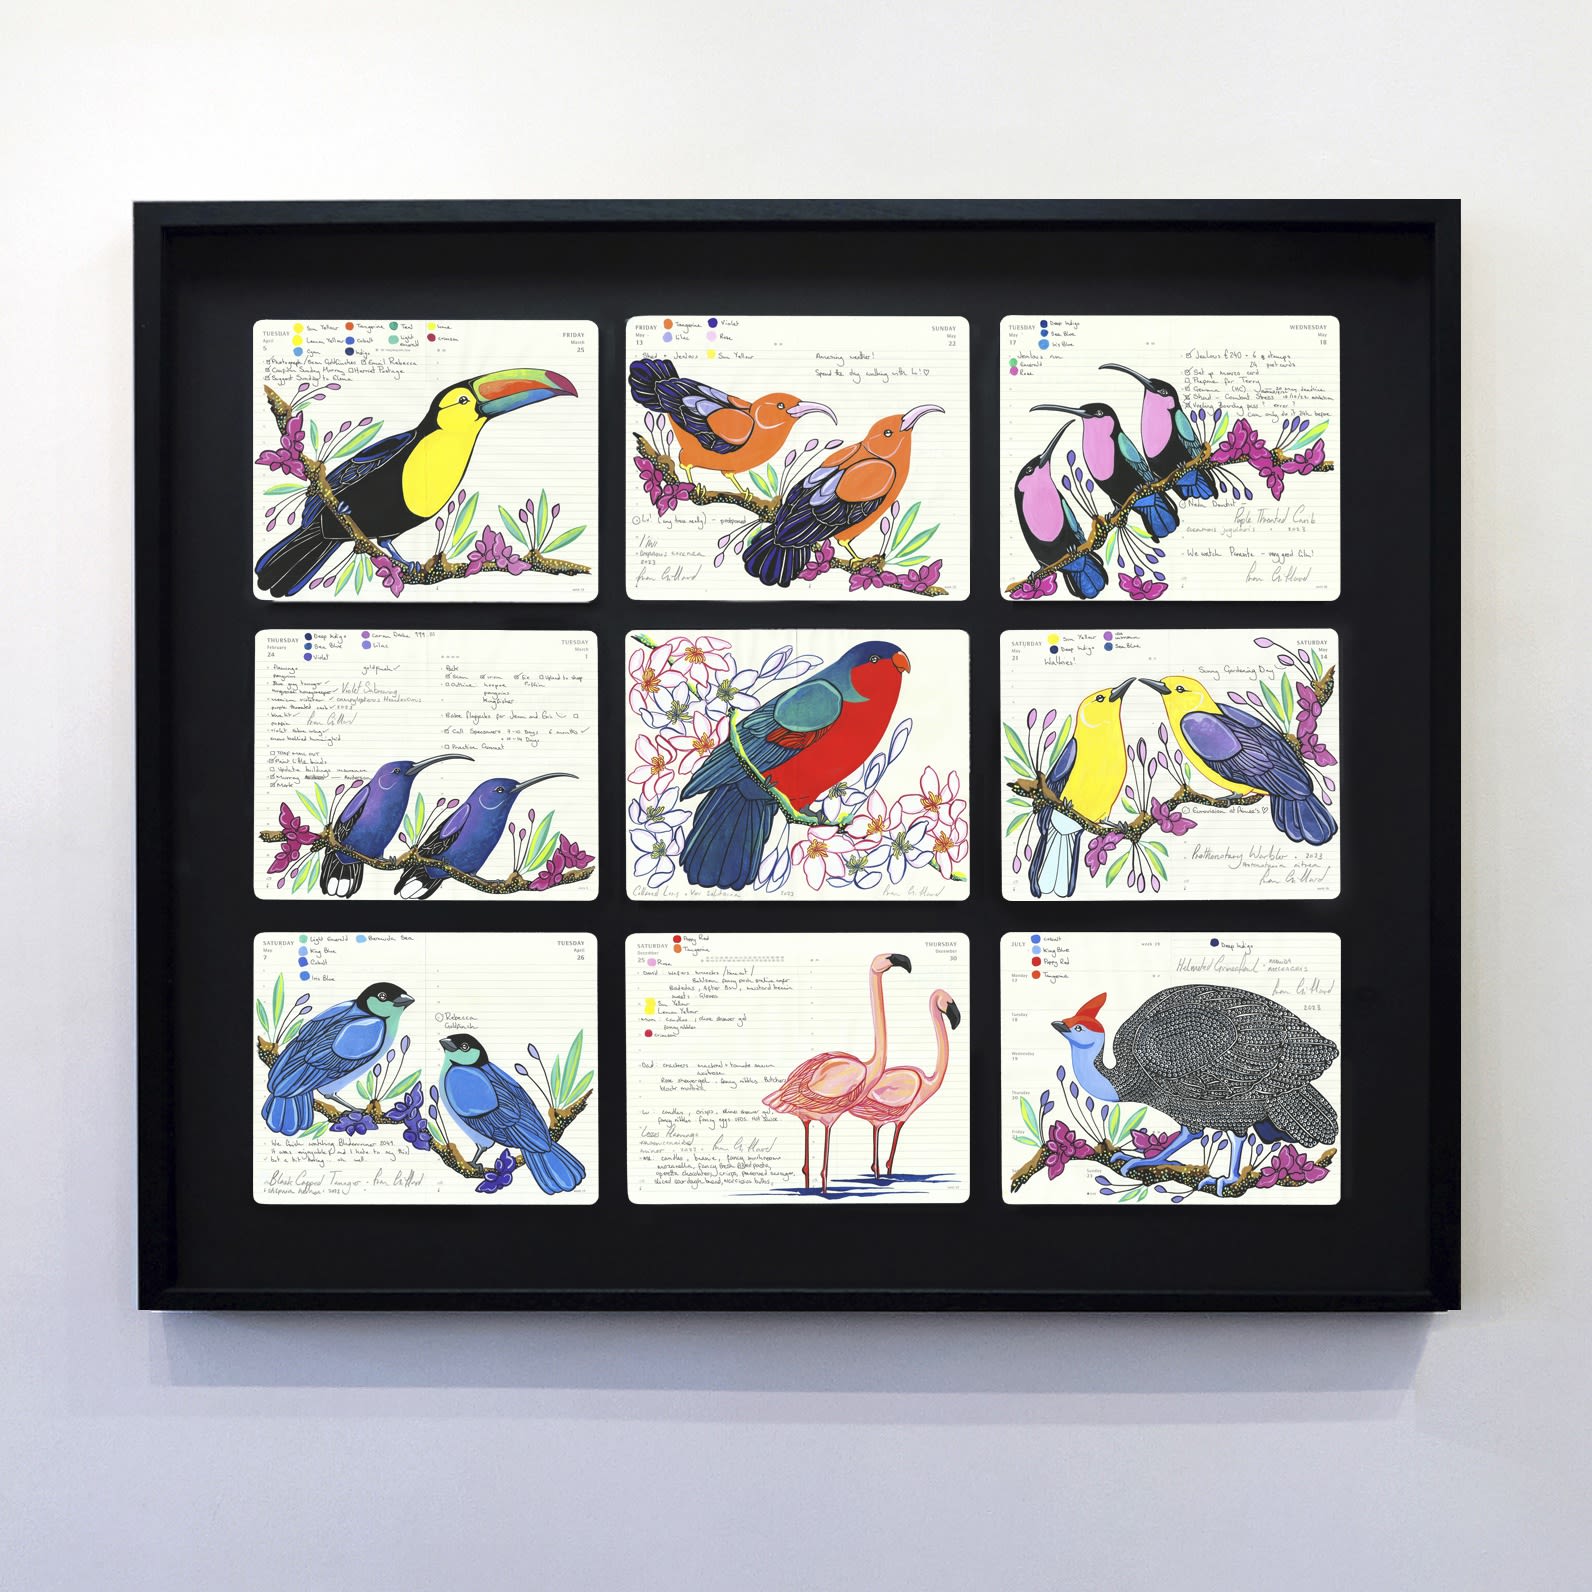 Presentation of Fran Giffards' beautiful bird artworks